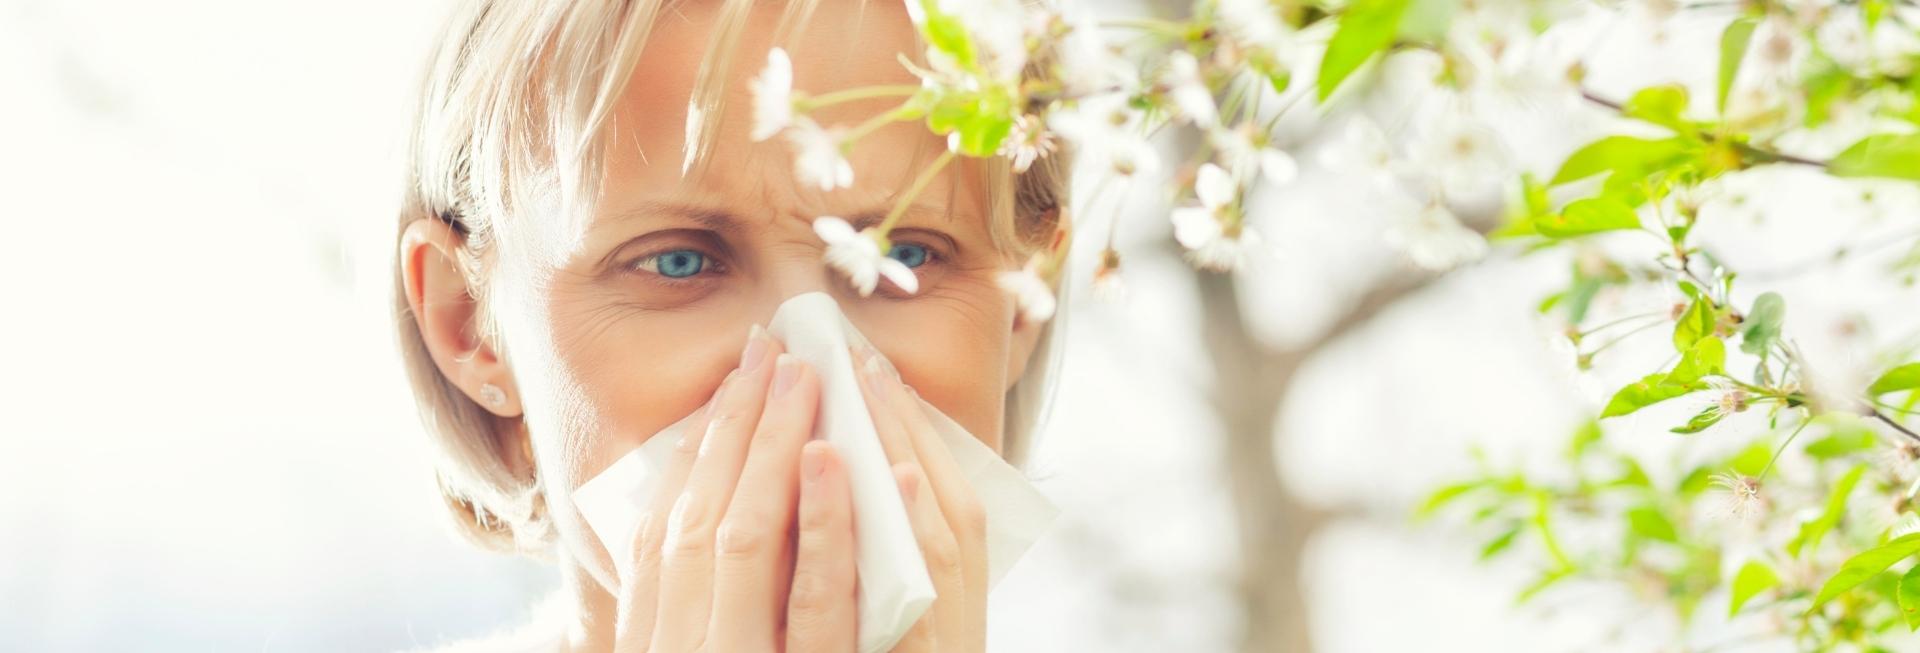 Esempio di allergia ai pollini diagnosticabile attraverso le prove allergiche agli inalanti